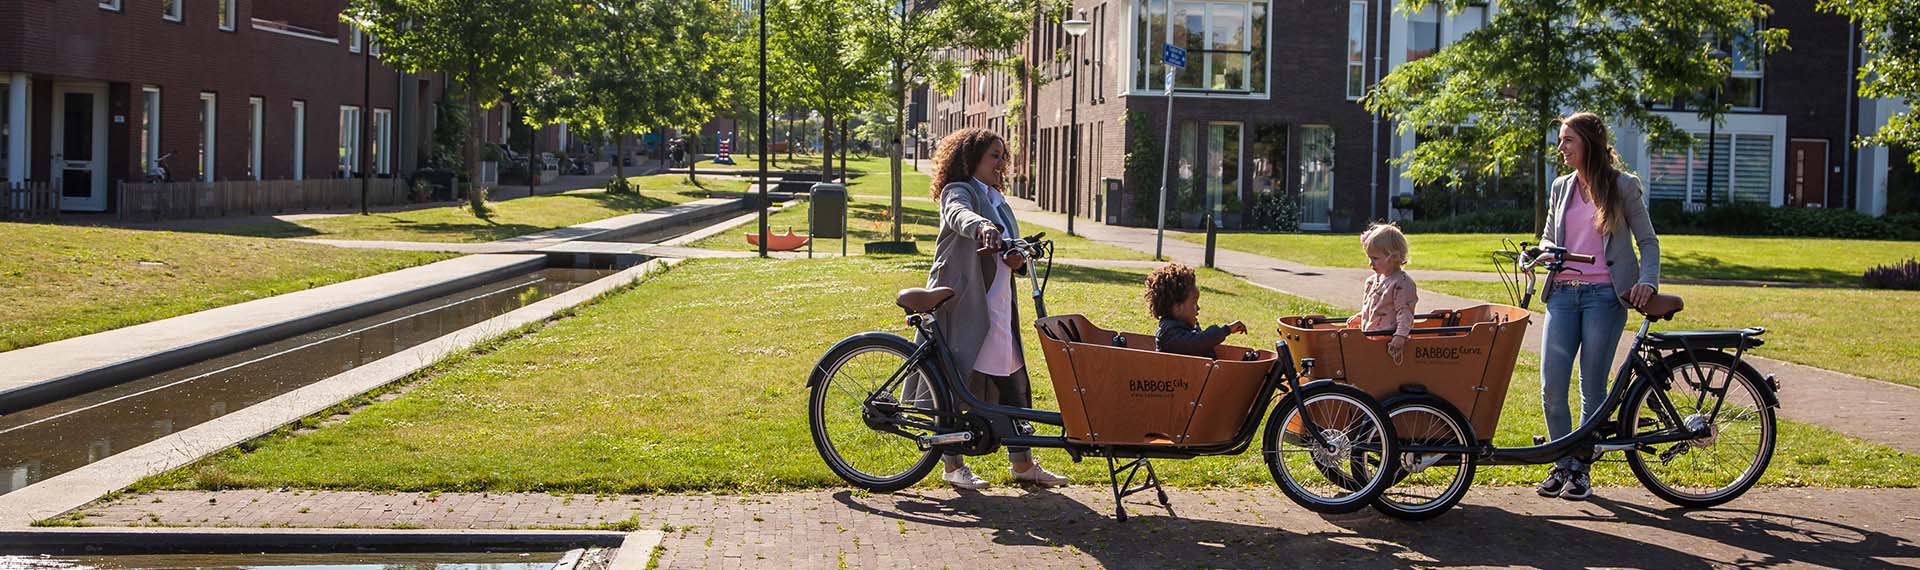 Housse de pluie pour le vélo Christiania Christiania Bikes